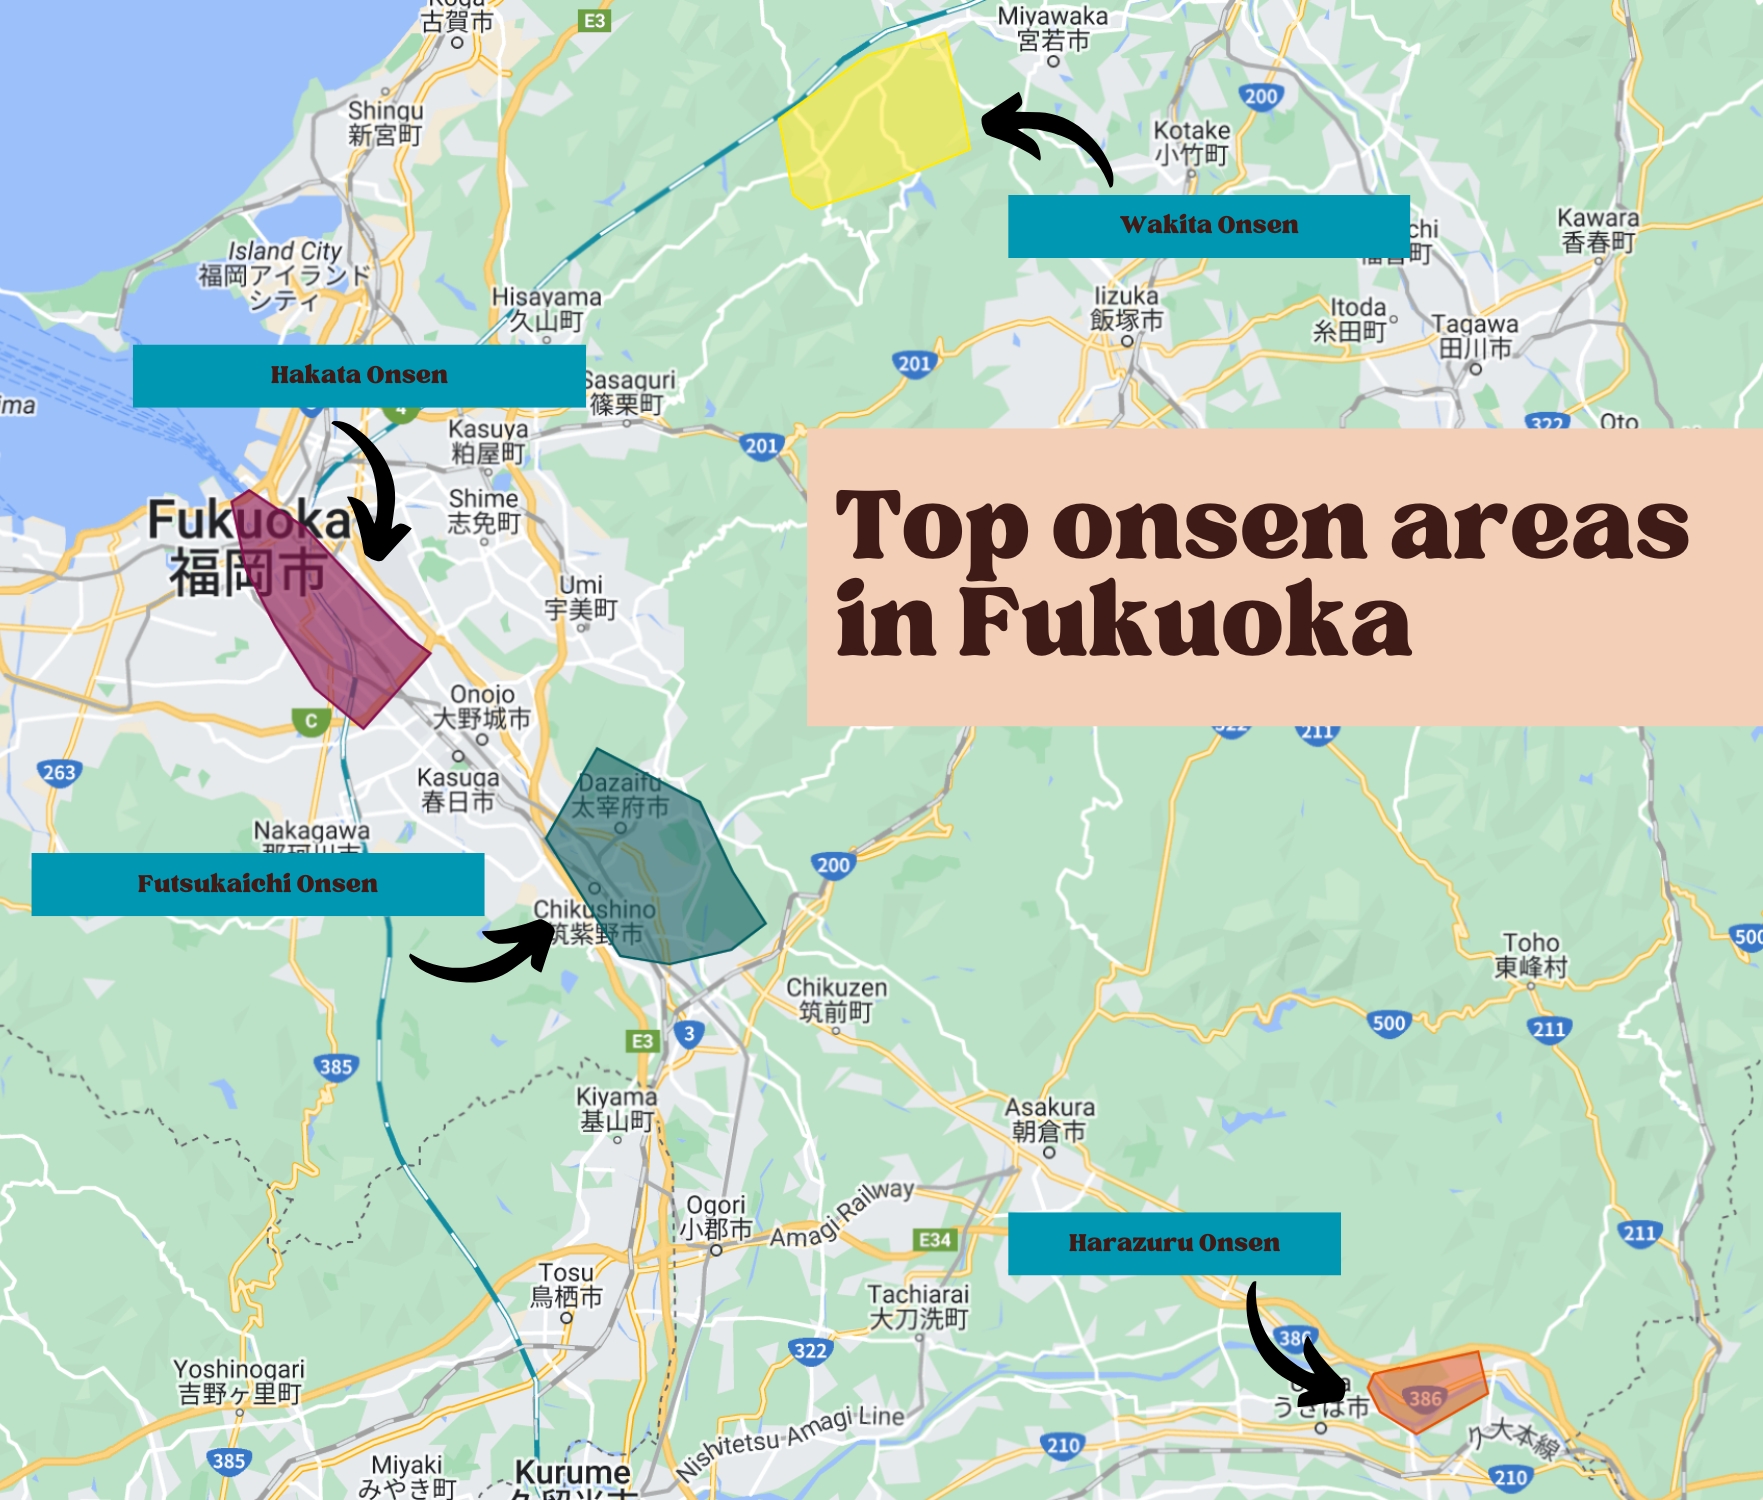 Top Fukuoka onsen areas